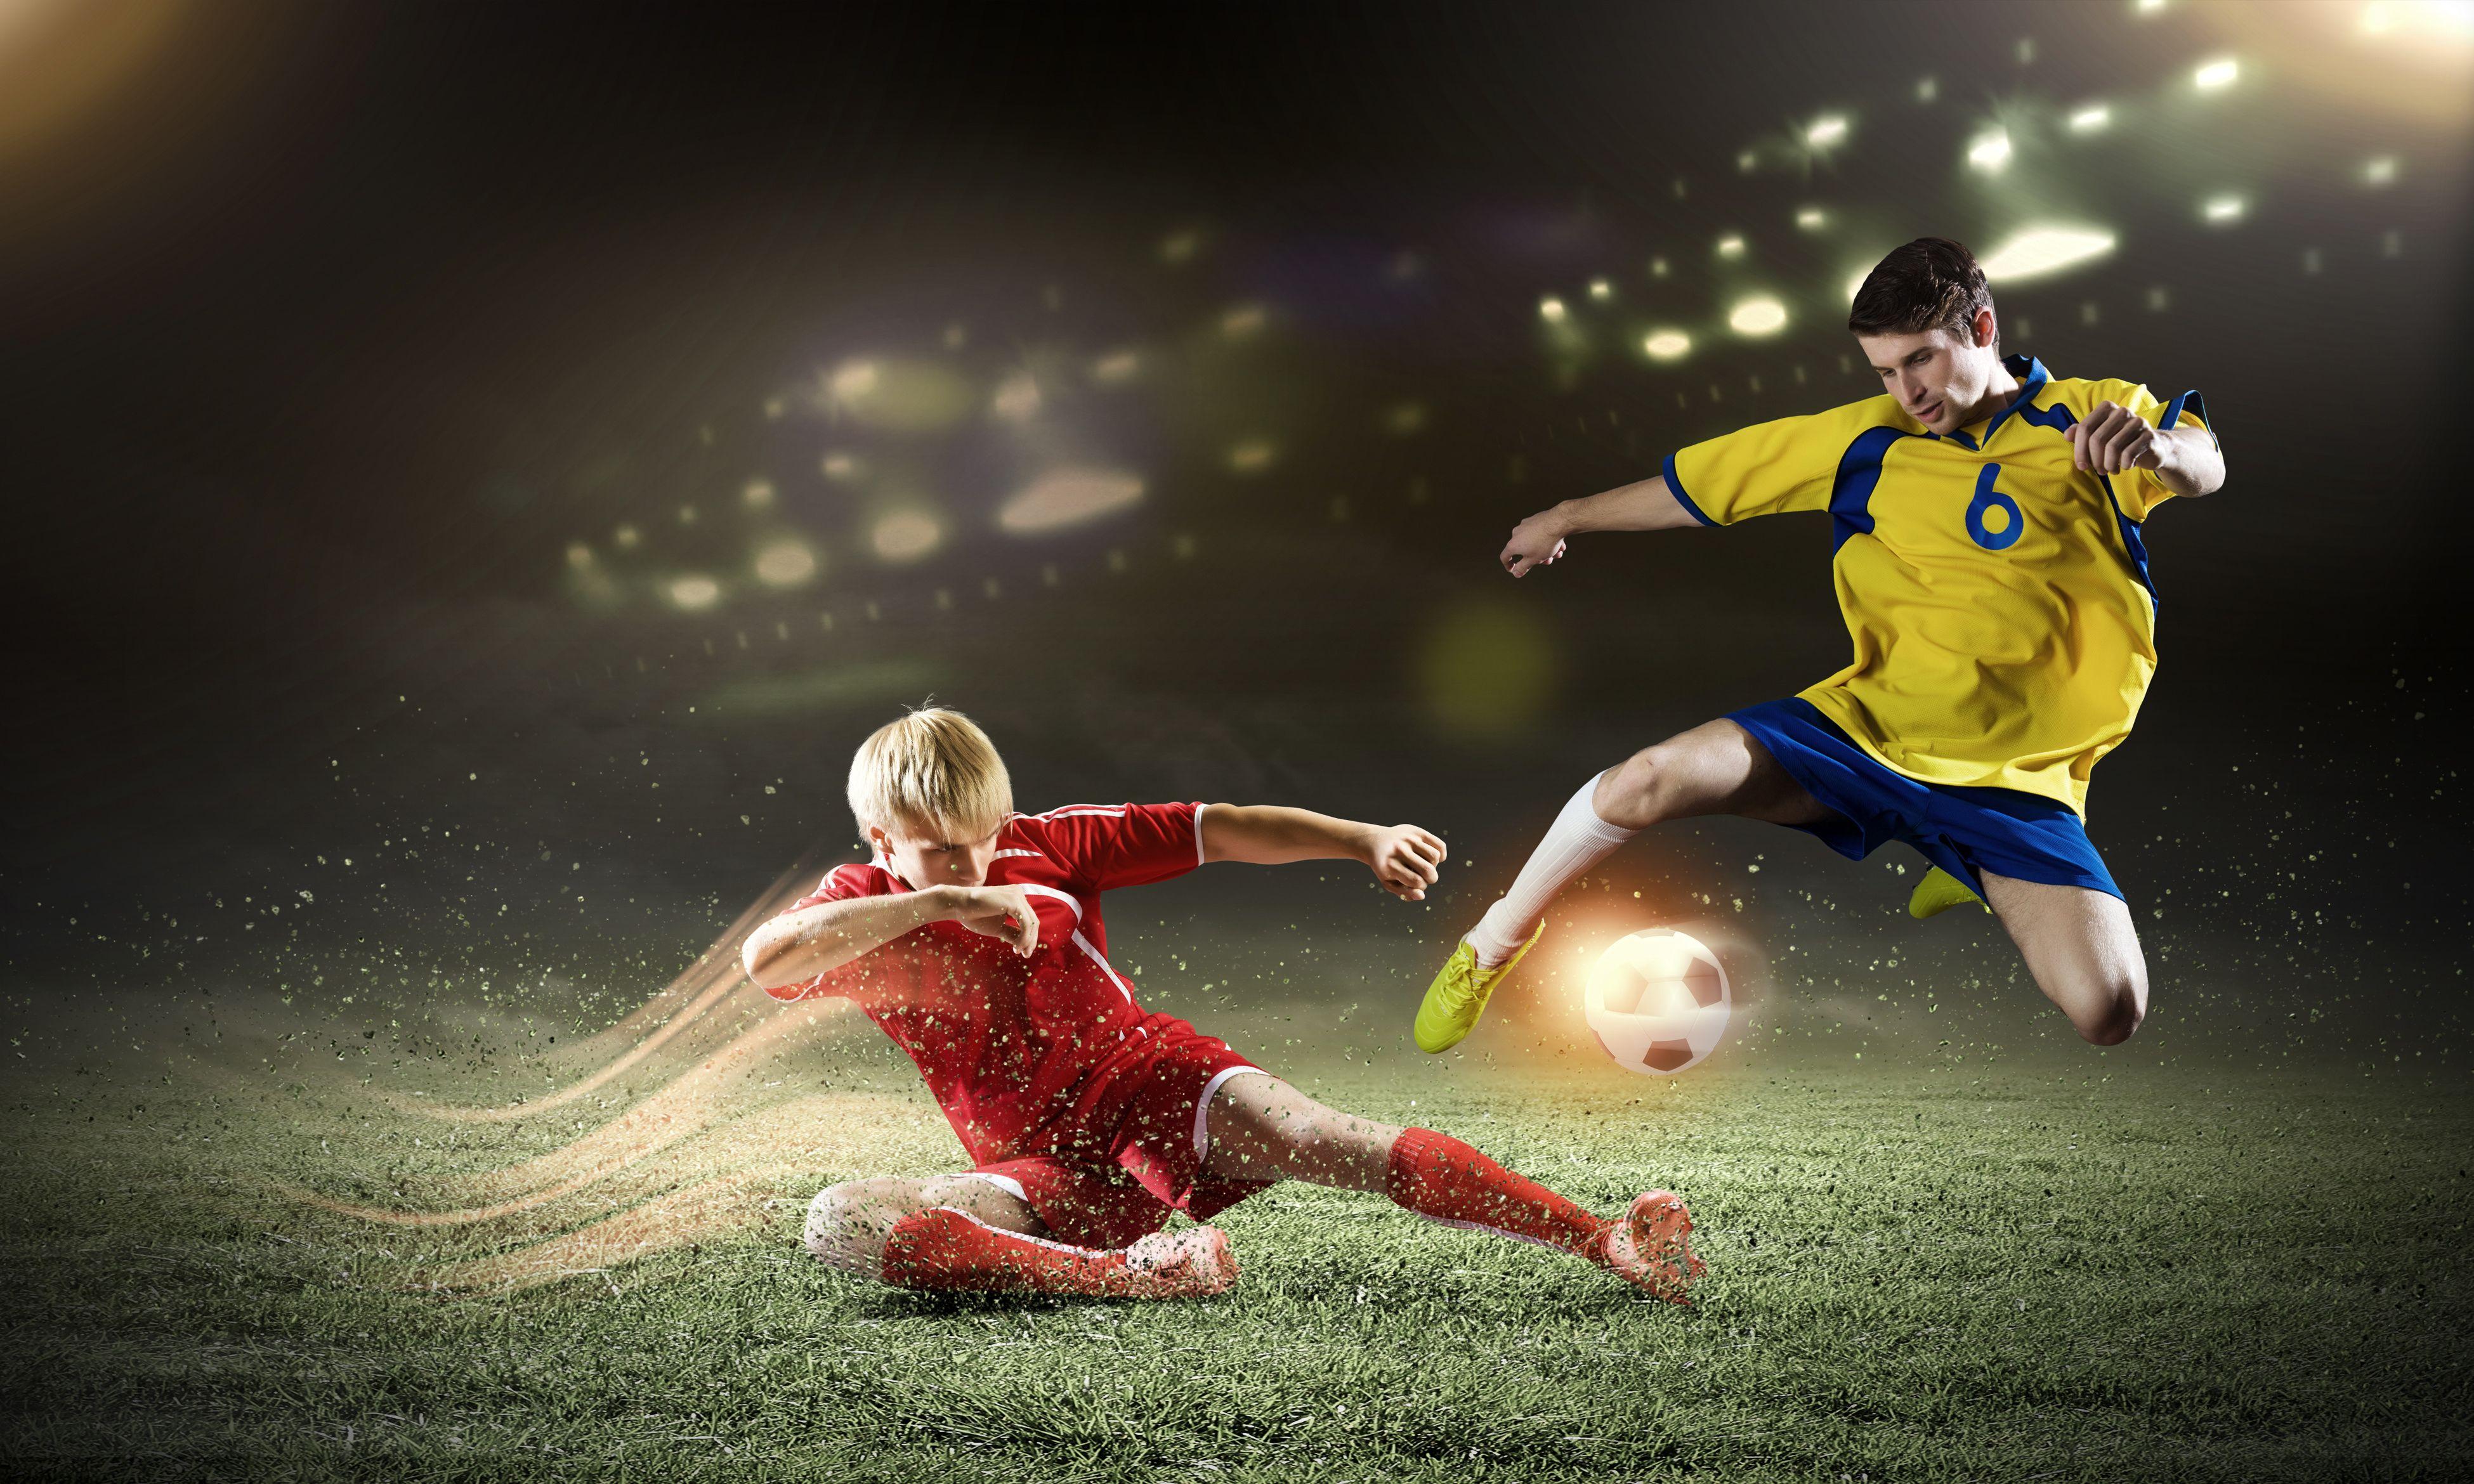 4K Ultra HD Soccer Wallpapers - Top Free 4K Ultra HD ...